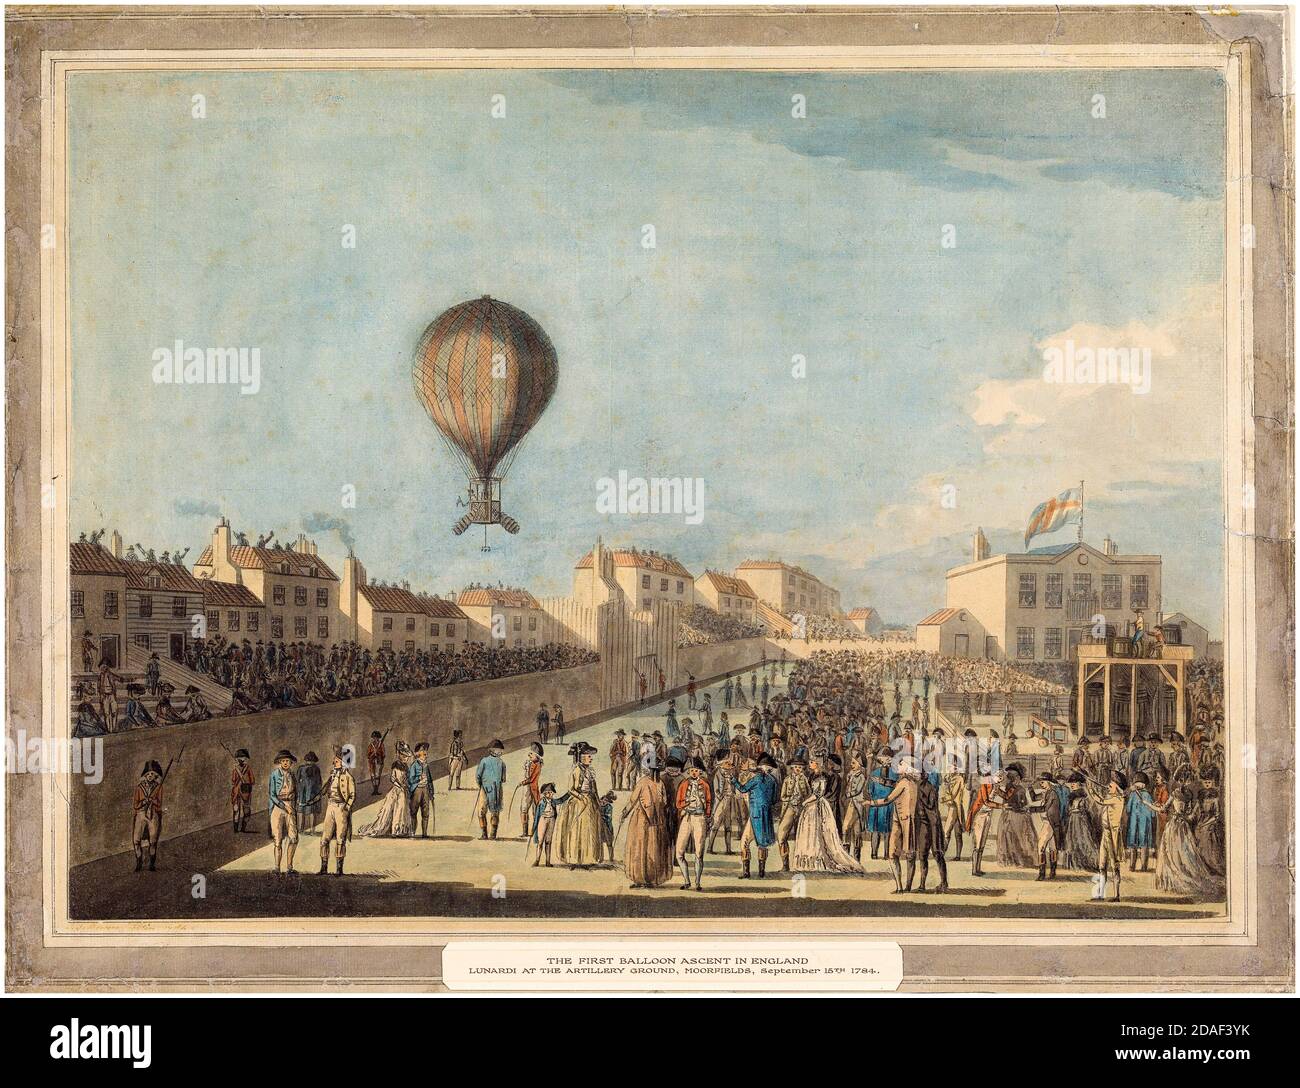 Francis Jukes, der erste bemannte Ballonflug in England, 15. September 1784, durchgeführt von Vincenzo Lunardi, gedruckt um 1784 Stockfoto